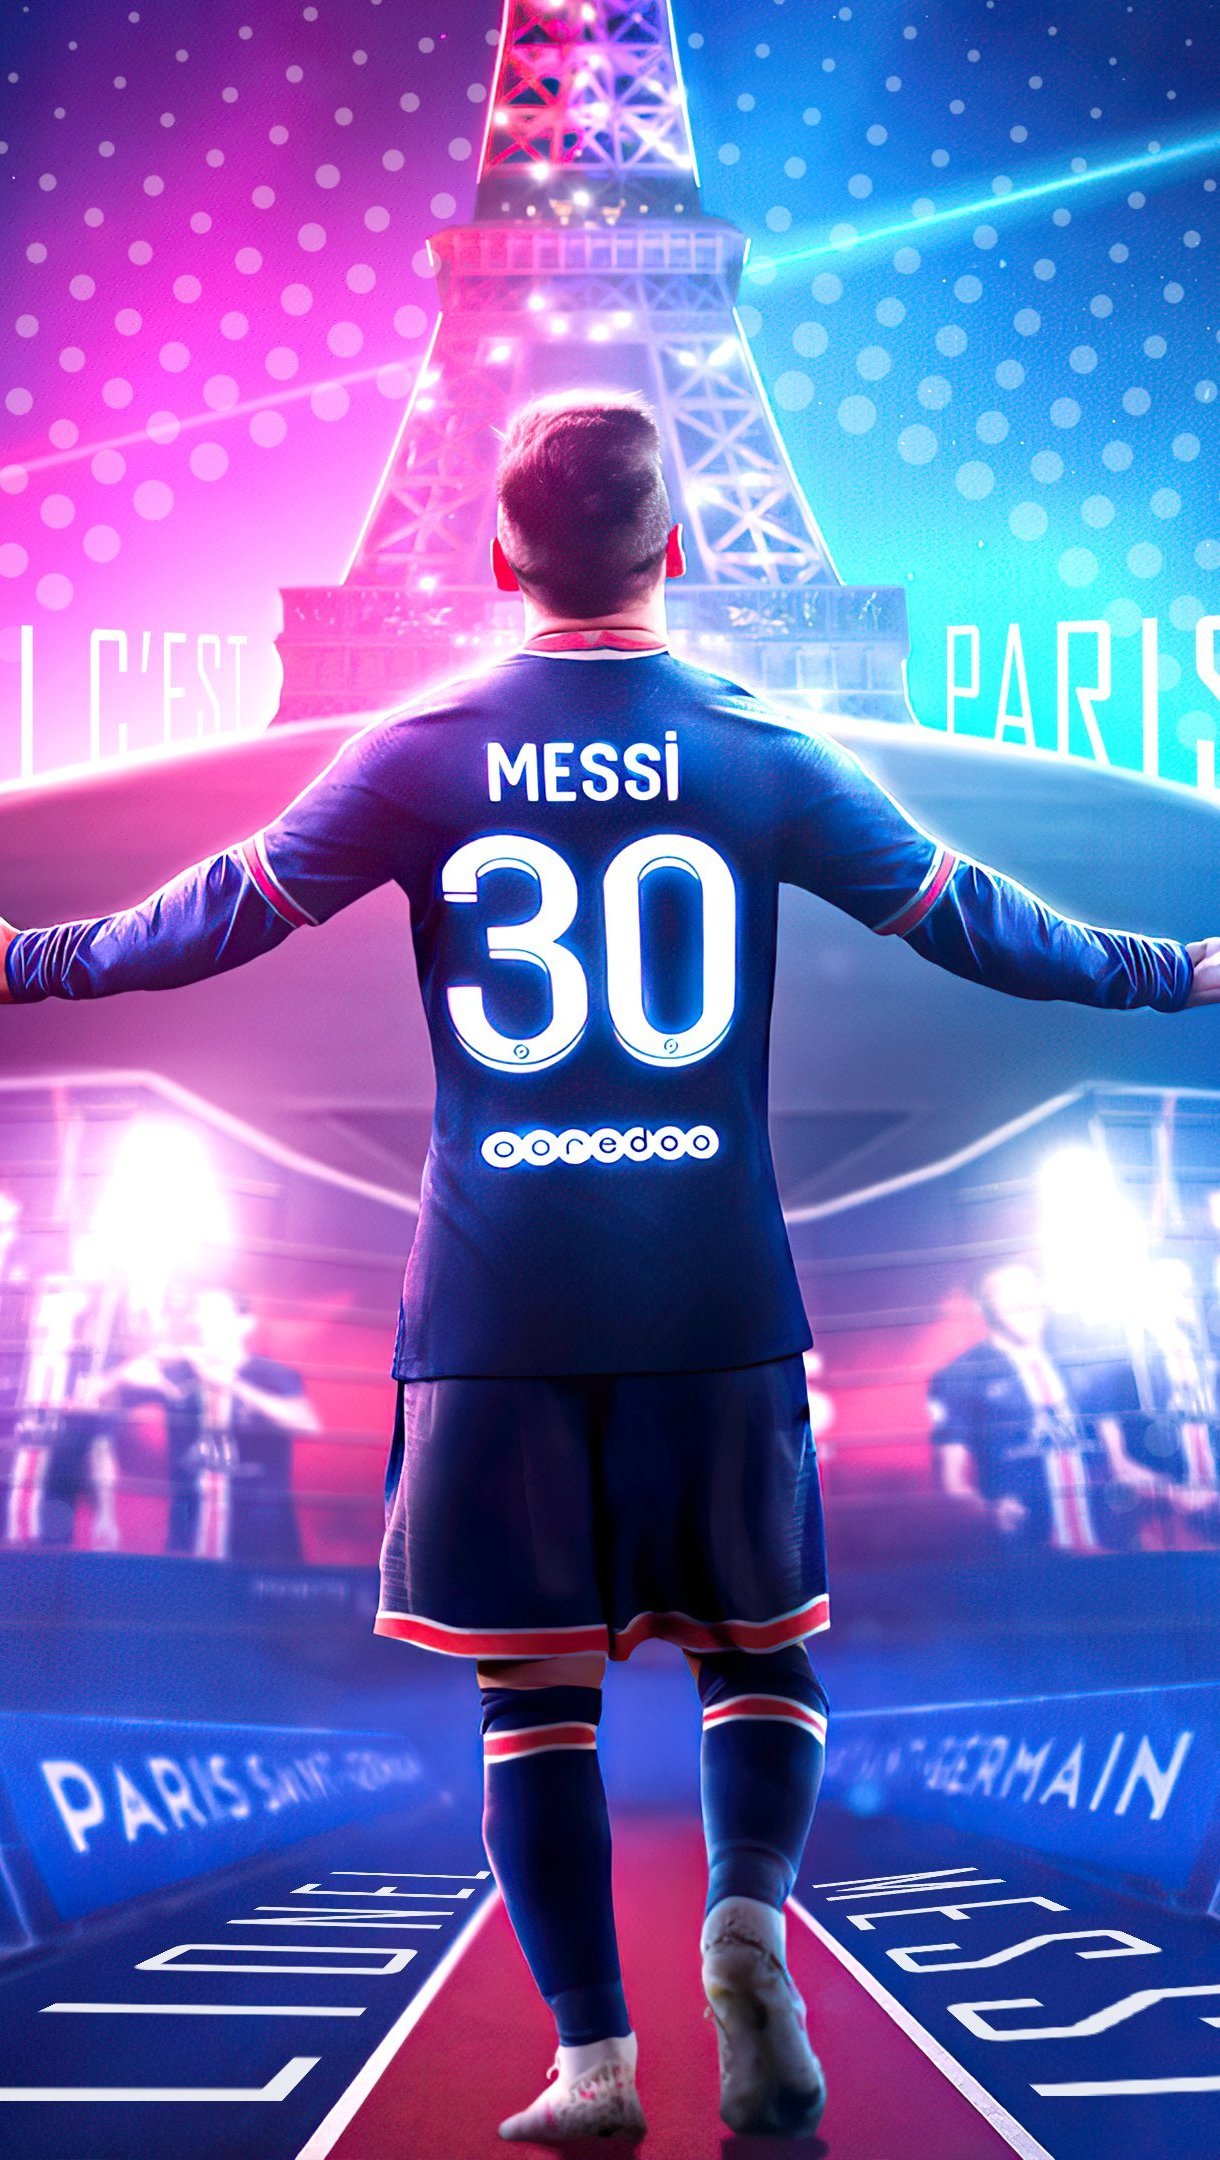 Hình nền 4k Ultra HD Lionel Messi PSG sẽ khiến bạn đắm chìm trong thế giới bóng đá đầy cảm xúc. Với chất lượng hình ảnh tuyệt vời, bạn sẽ dễ dàng cảm nhận được sự to lớn và uy quyền của Messi trên sân cỏ. Hãy cùng xem những hình ảnh này để thấy rõ hơn tài năng của người hùng bóng đá này.